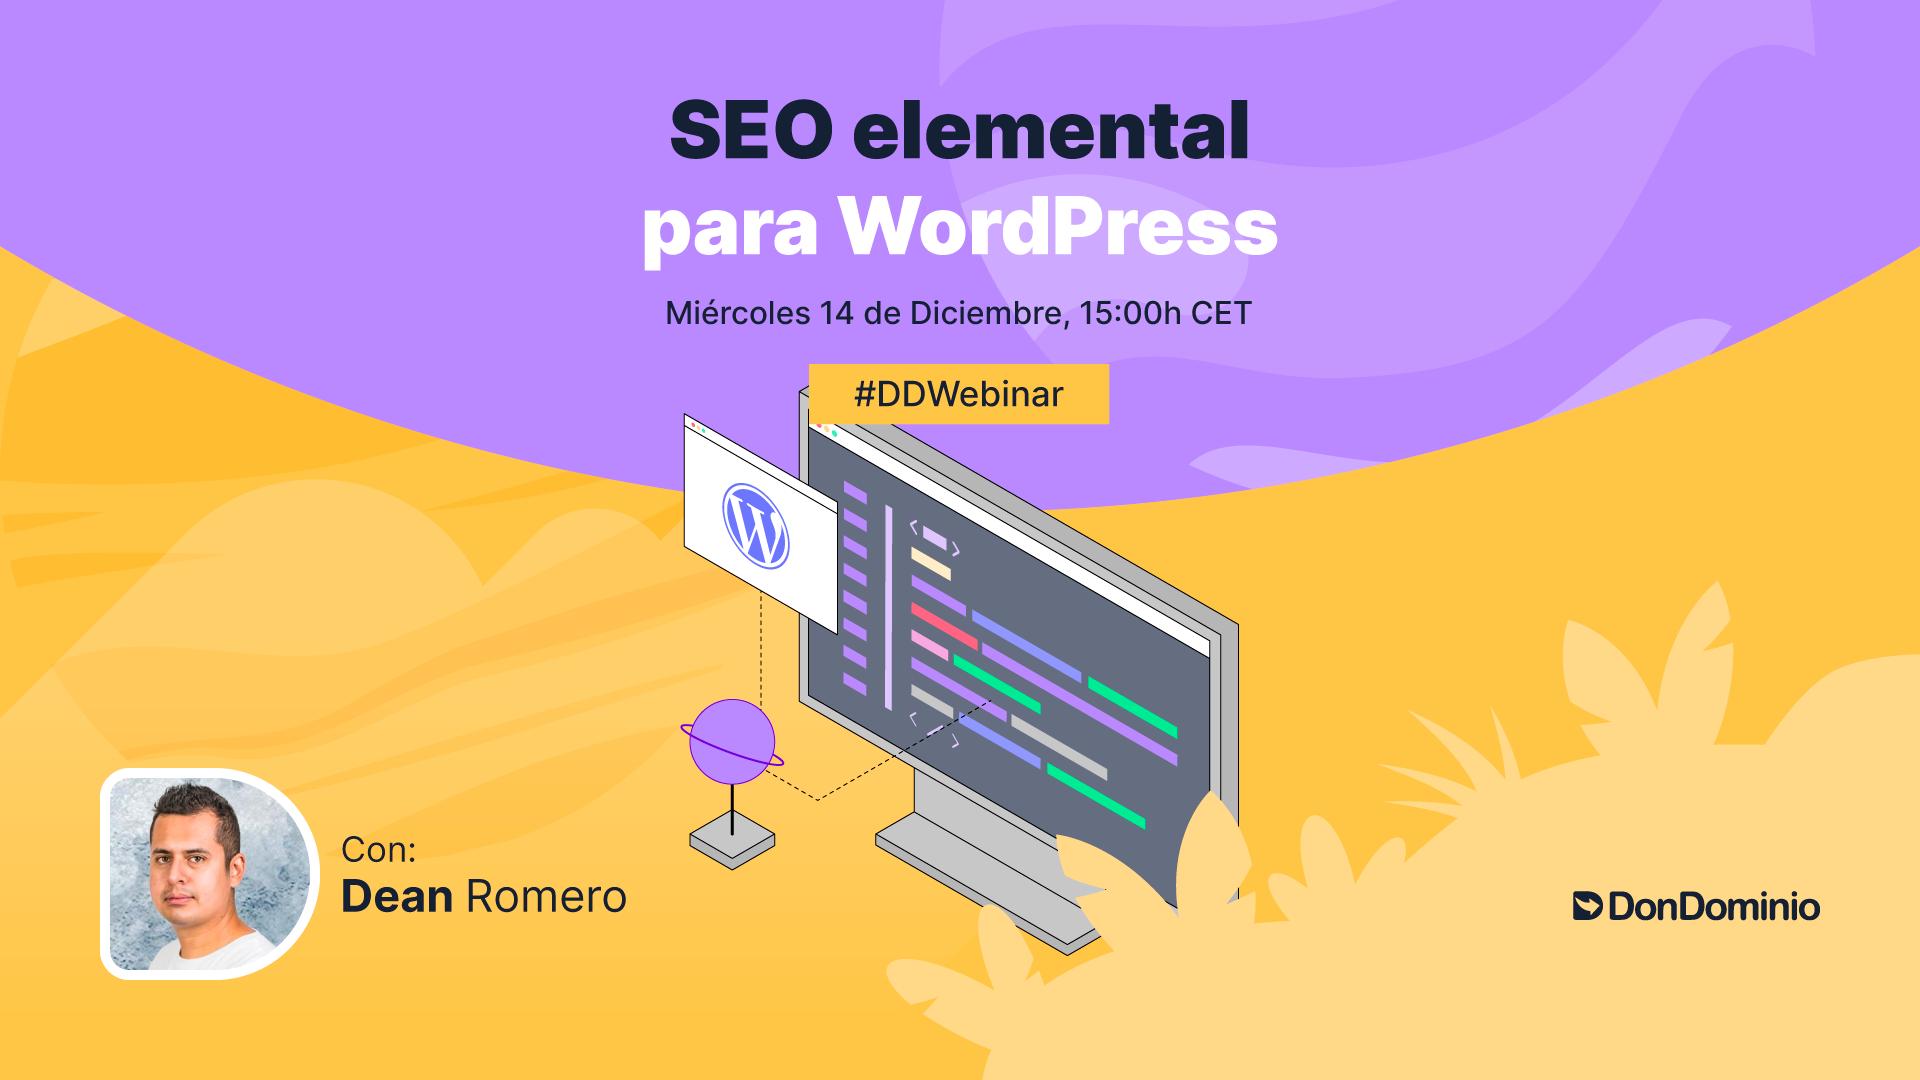 DonDominio Webinar: SEO elemental para WordPress